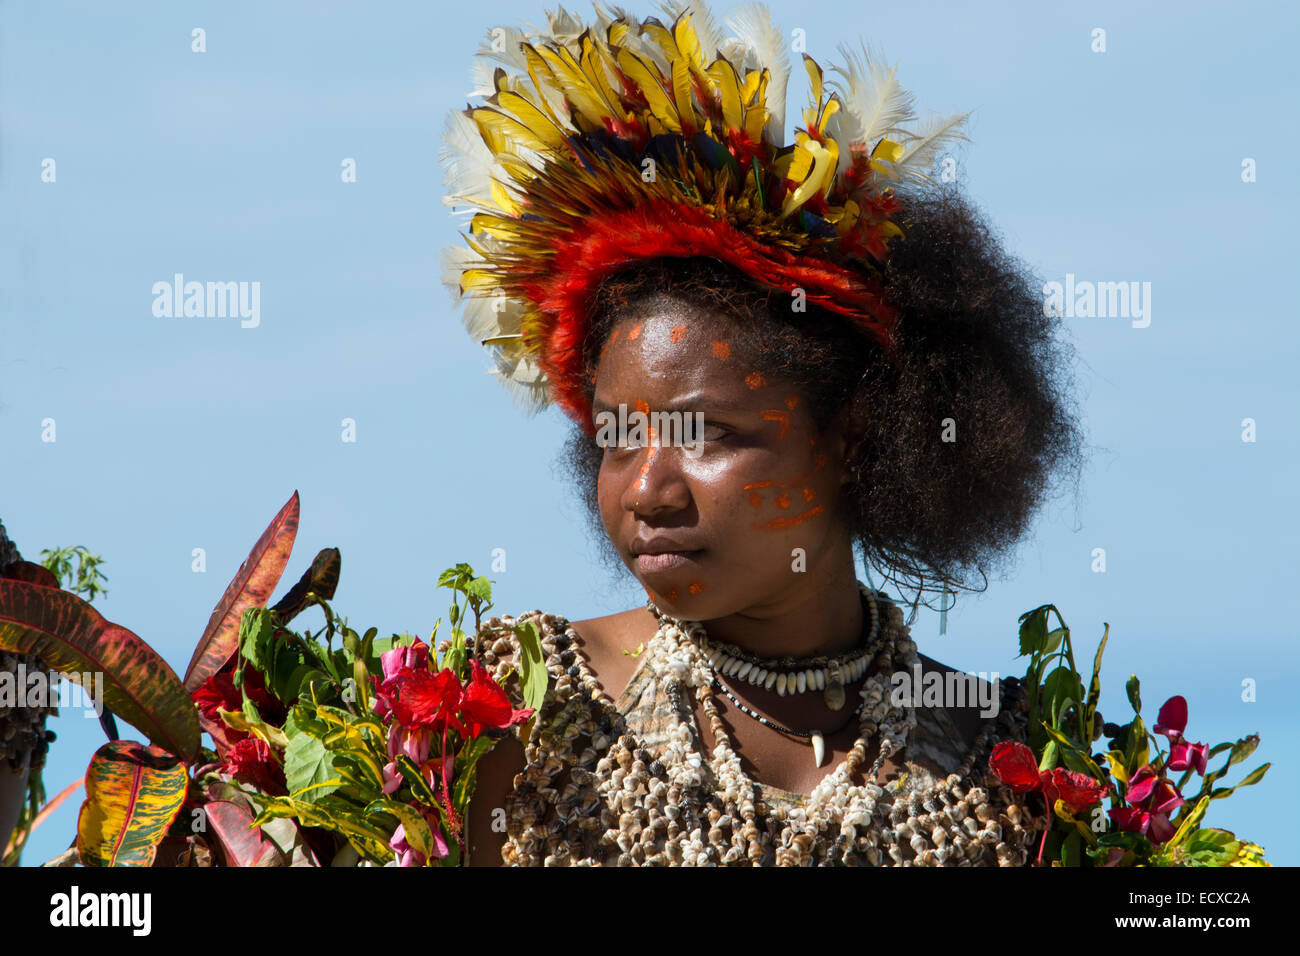 Melanesien, Papua Neu Guinea, Tufi.  Dorf Frau gekleidet in der Kleidung der einheimischen Sing-Sing. Tufi ist bekannt für seine kunstvollen t Stockfoto